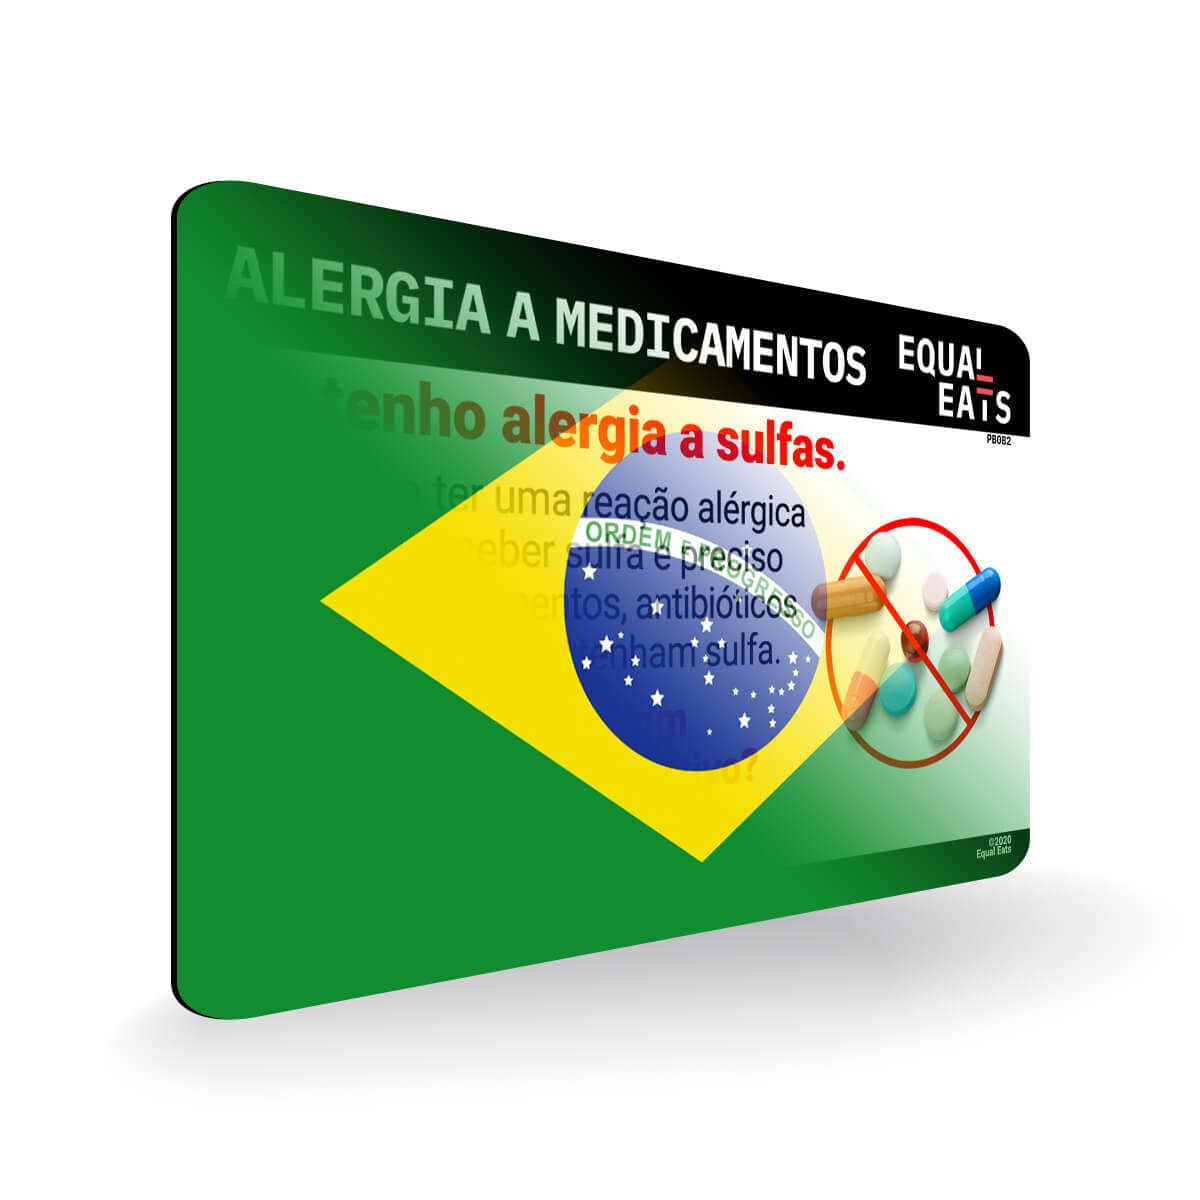 Sulfa Allergy in Portuguese. Sulfa Medicine Allergy Card for Brazil